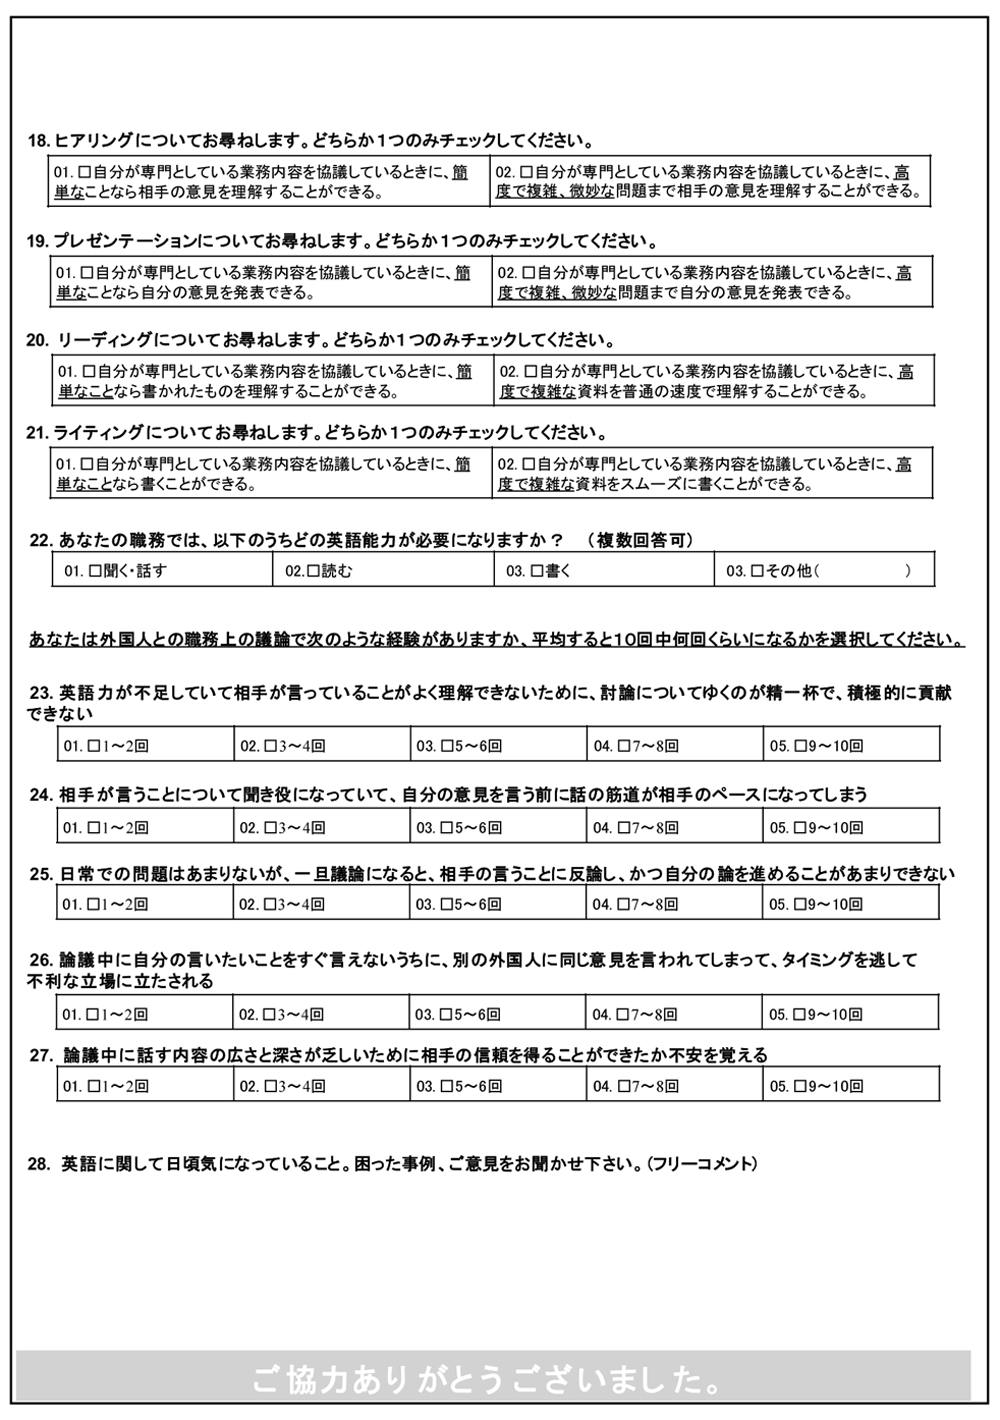 日本企業のグローバル化に必要な組織英語力に関する調査および効果的な強化施策の検討と実践